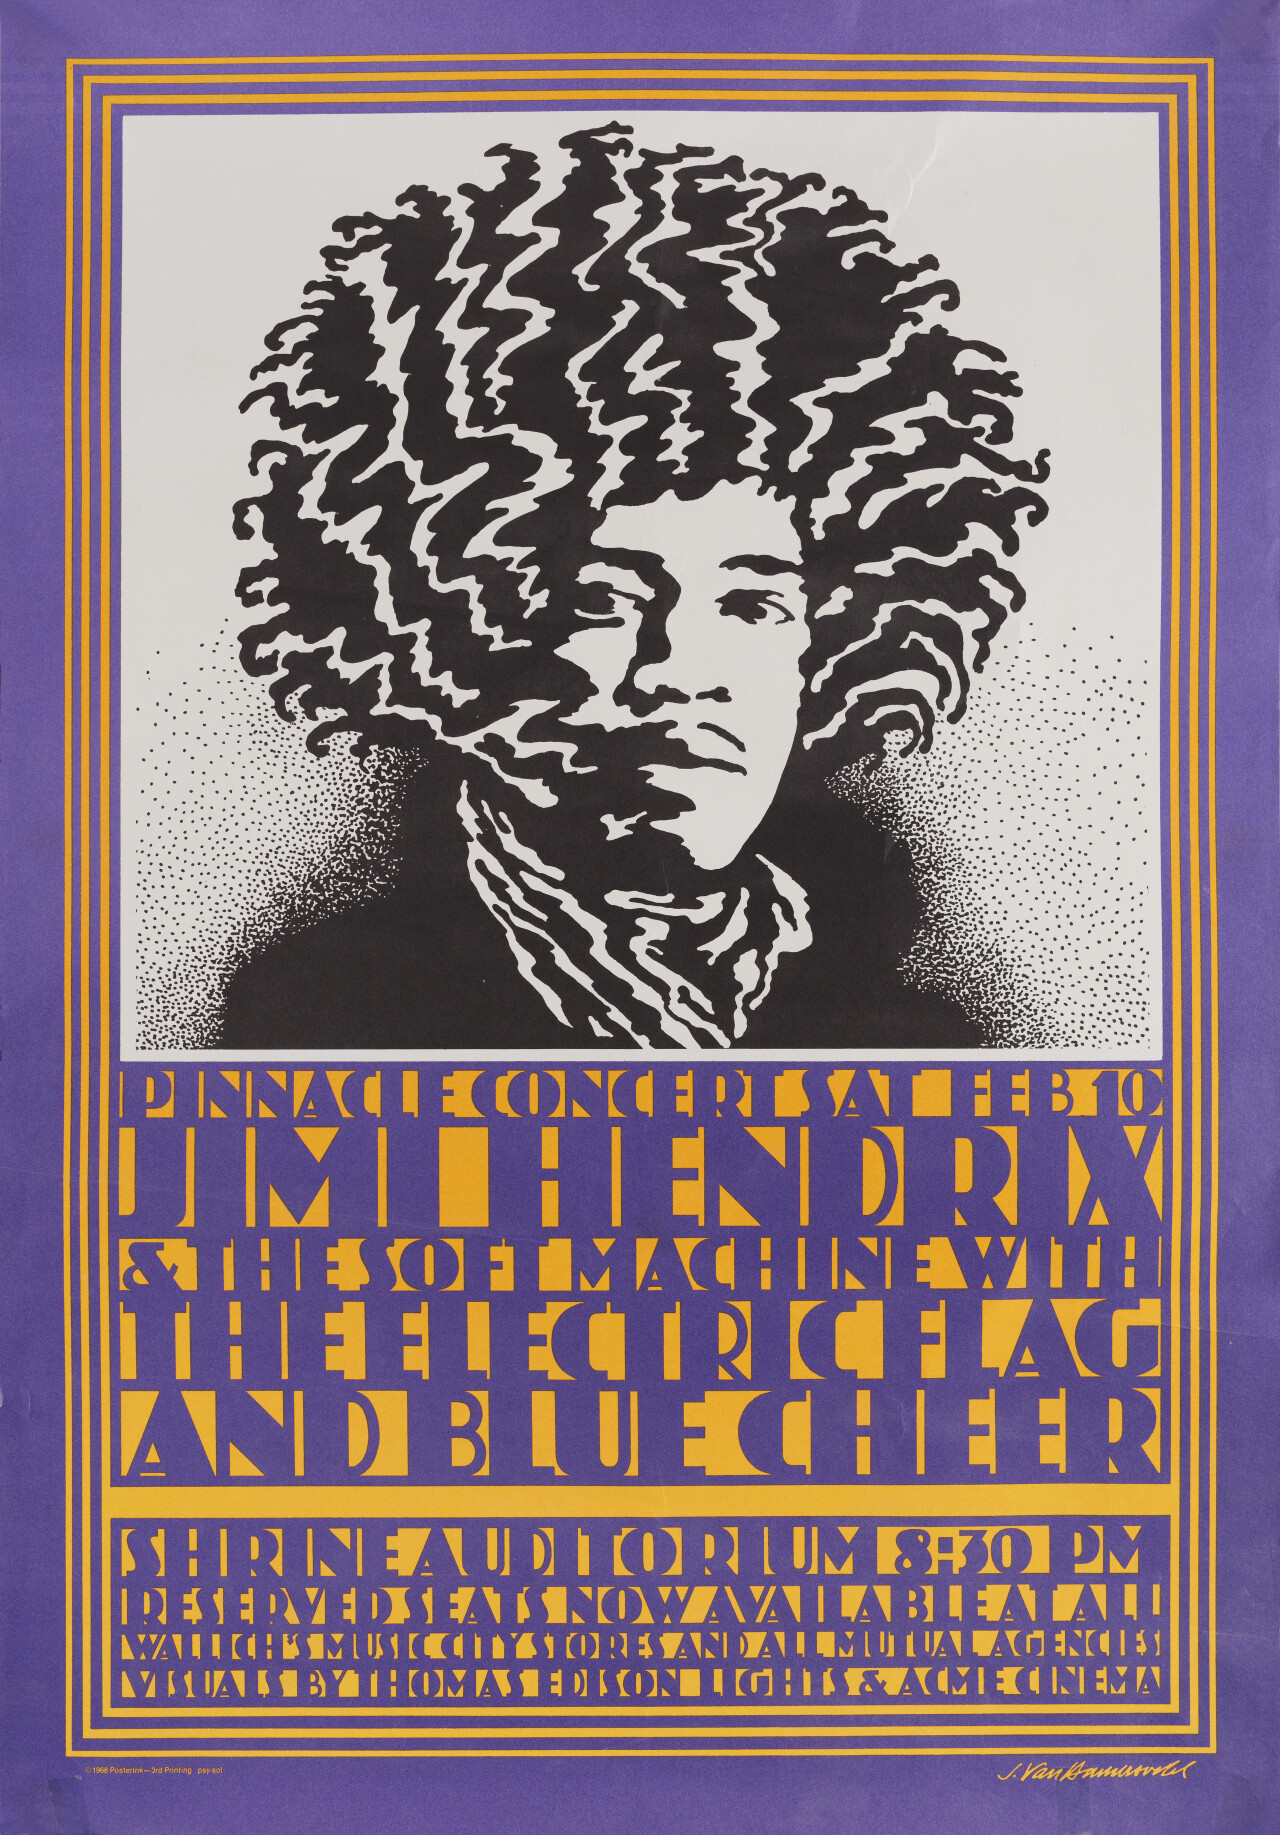 Джими Хендрикс, американский постер, автор Джон Ван Хамерсвелд (графический дизайн, 1968 год)